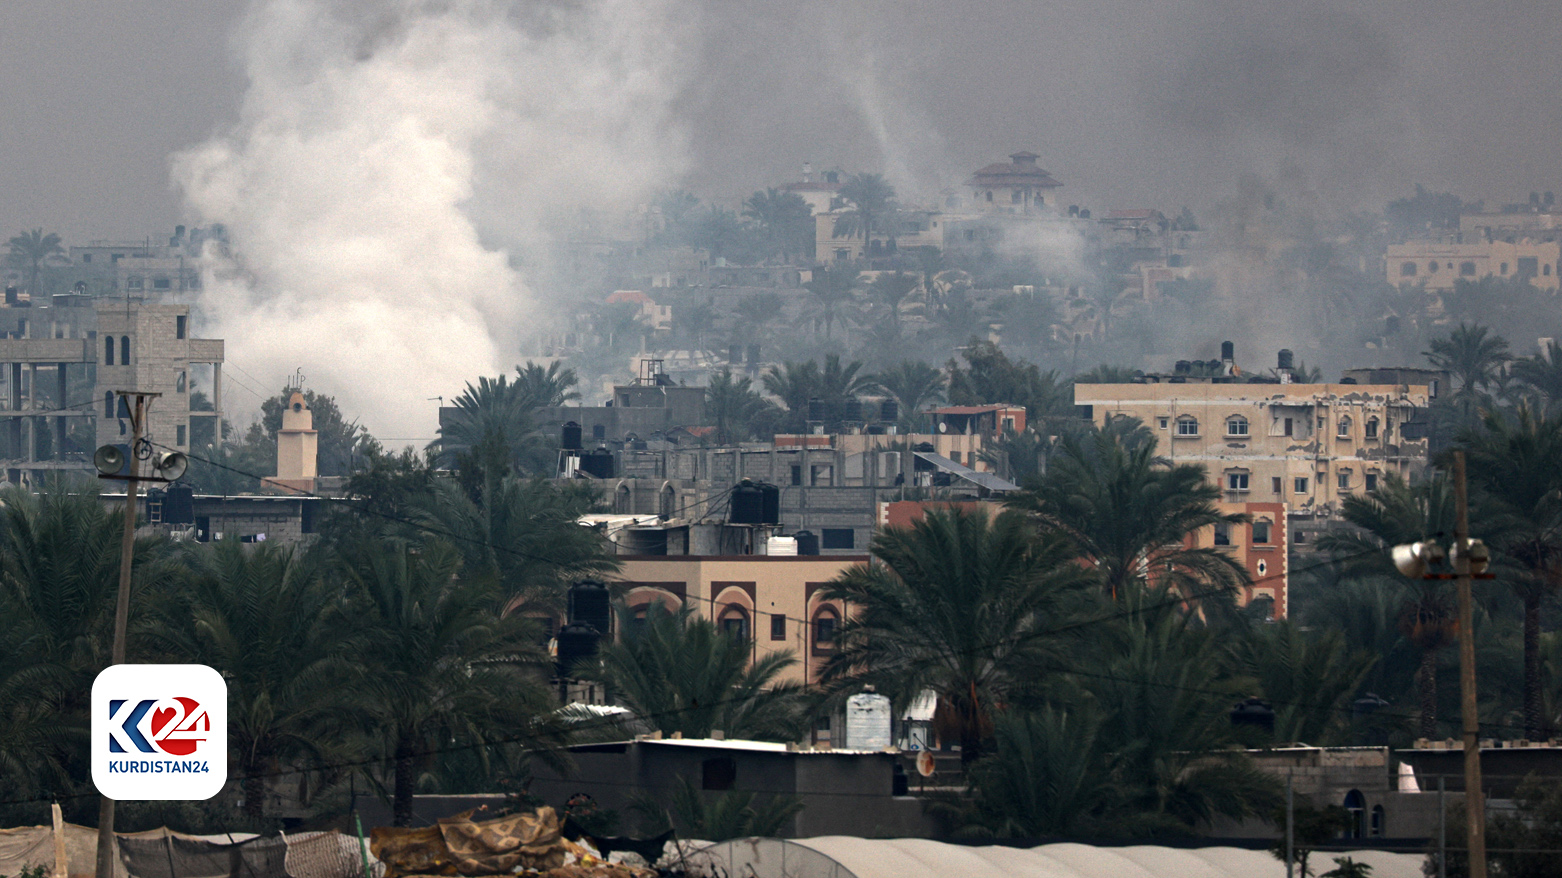 شهر خان یونس در جنوب غزه به کانون درگیری بین اسرائیل و حماس تبدیل شده است - عکس: خبرگزاری فرانسه